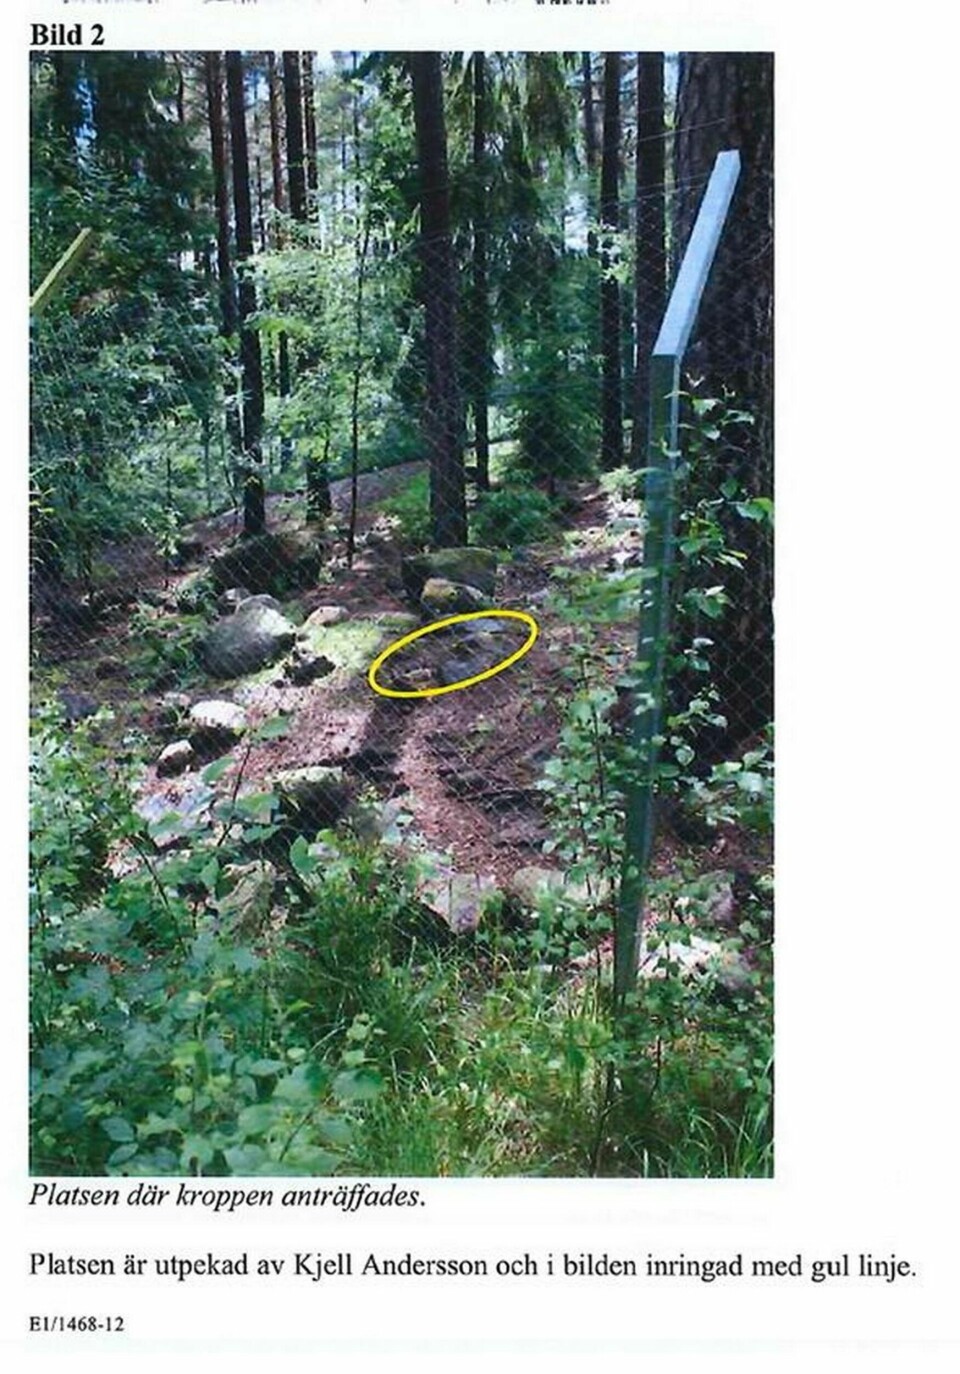 Bild från varghägnet ur polisutredningen. Platsen där djurvårdarens kropp hittades är gulmarkerad. Foto: Polisen